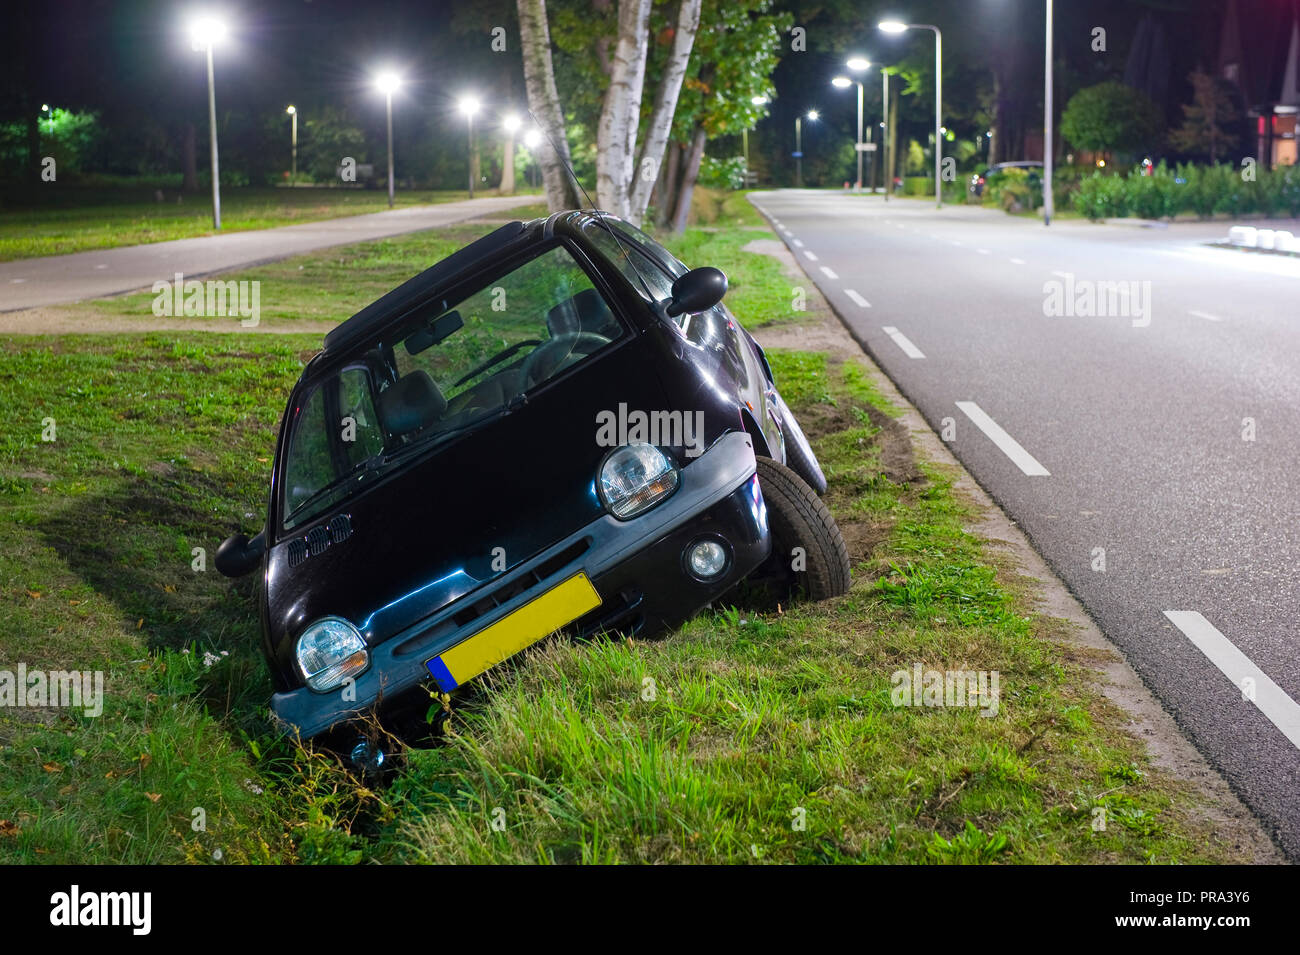 Ein Auto in einen Graben gefahren Stockfotografie - Alamy